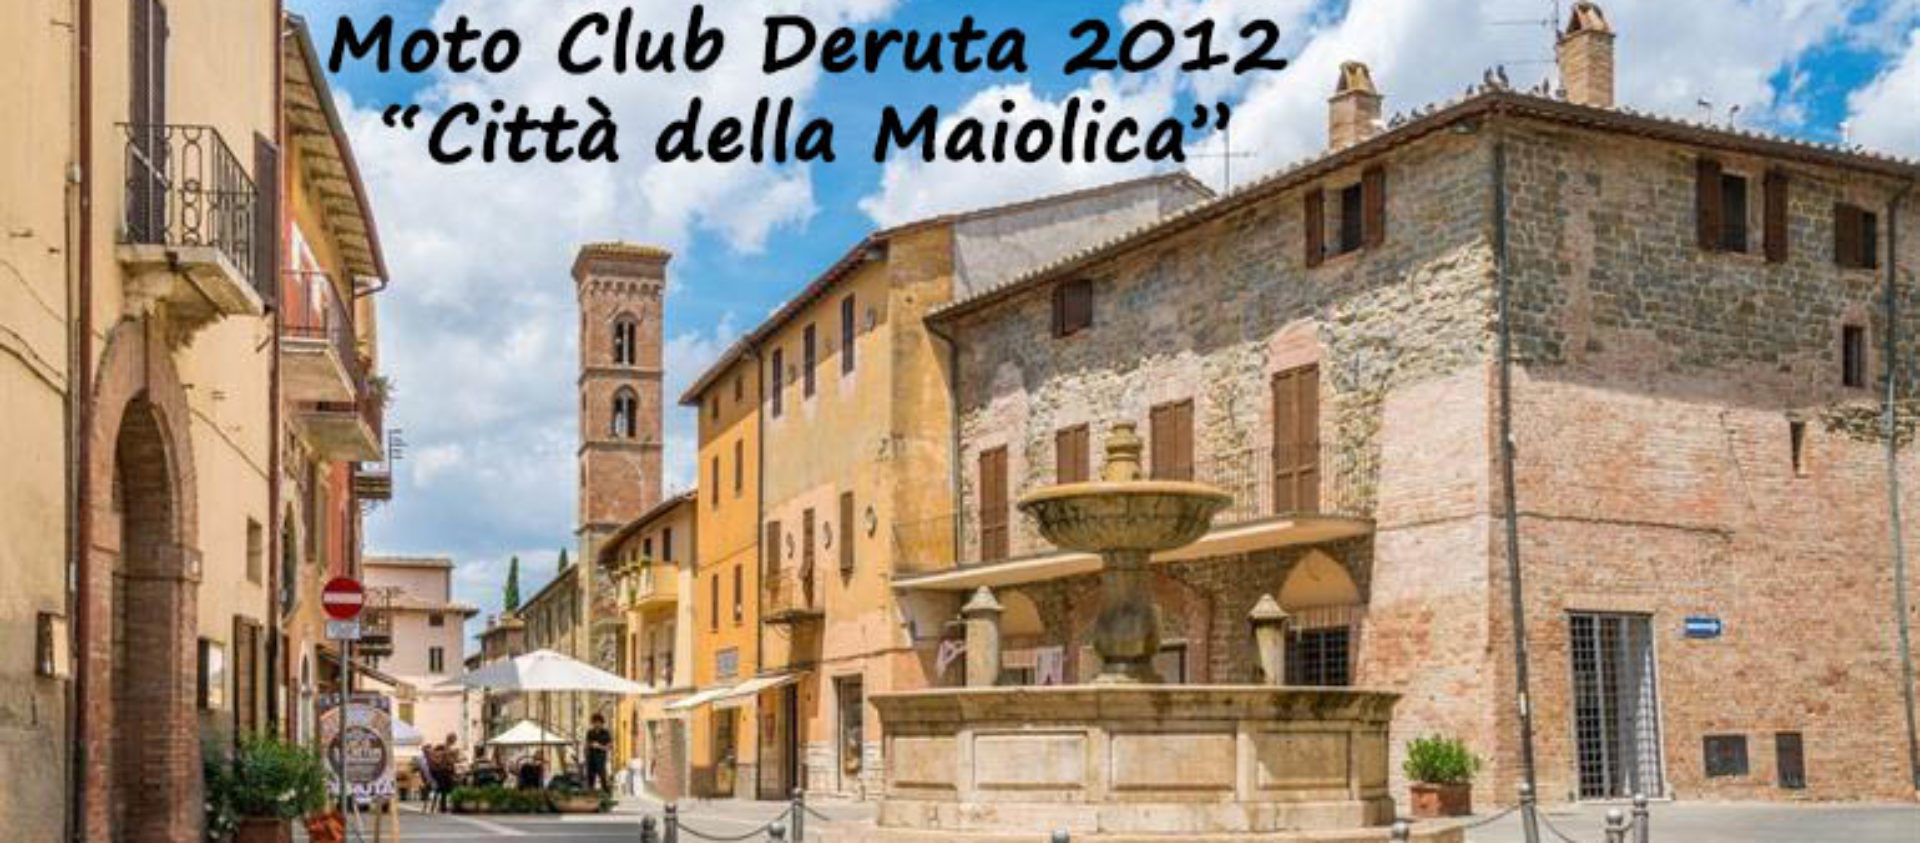 Moto Club Deruta 2012 "Città della Maiolica"